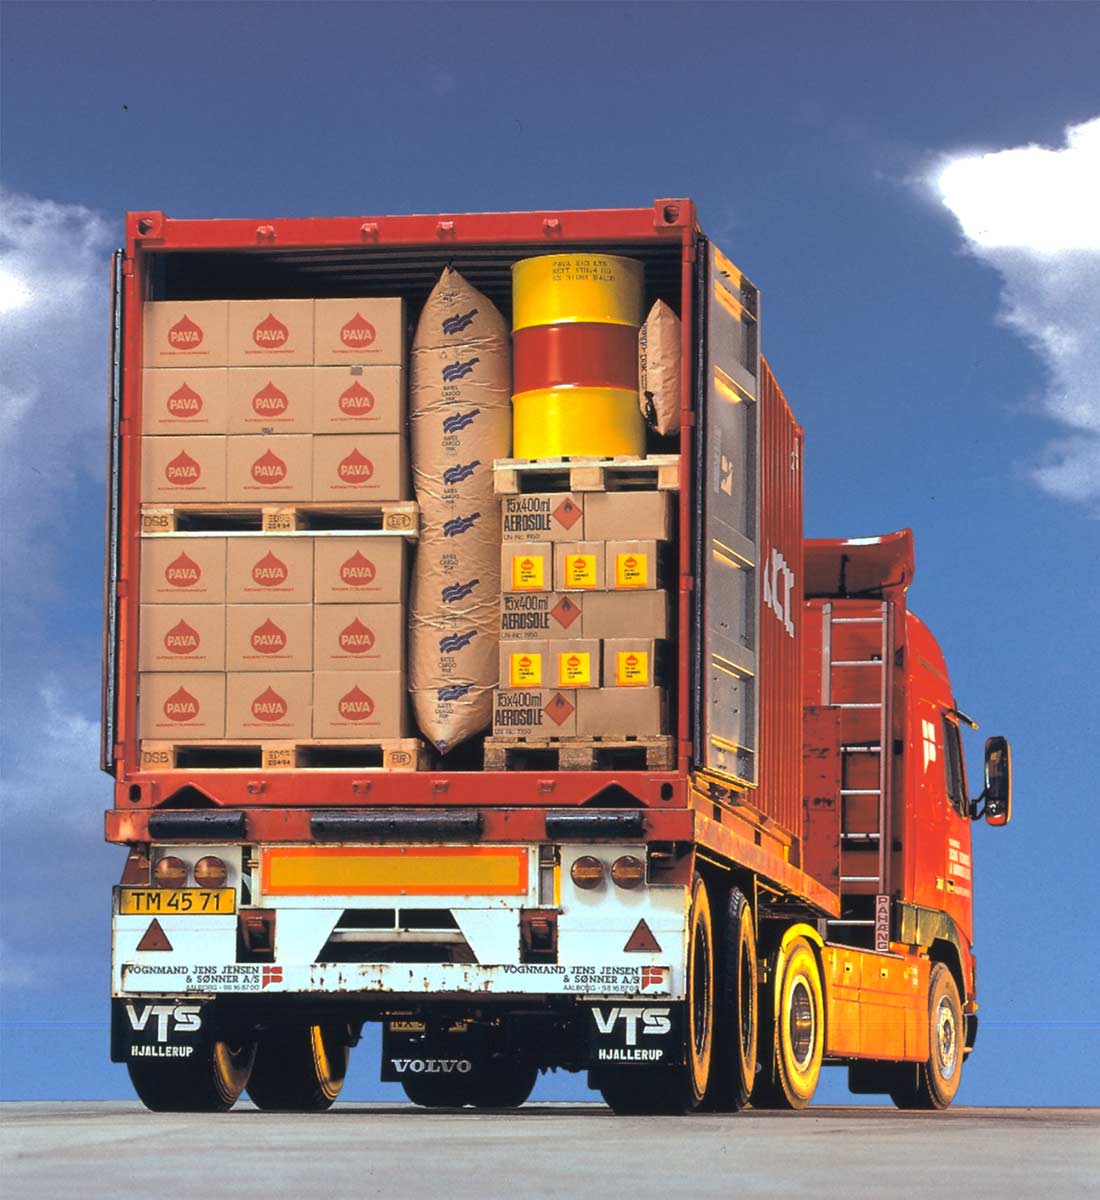 Sujeción de la carga para mantener sus productos seguros durante el transporte